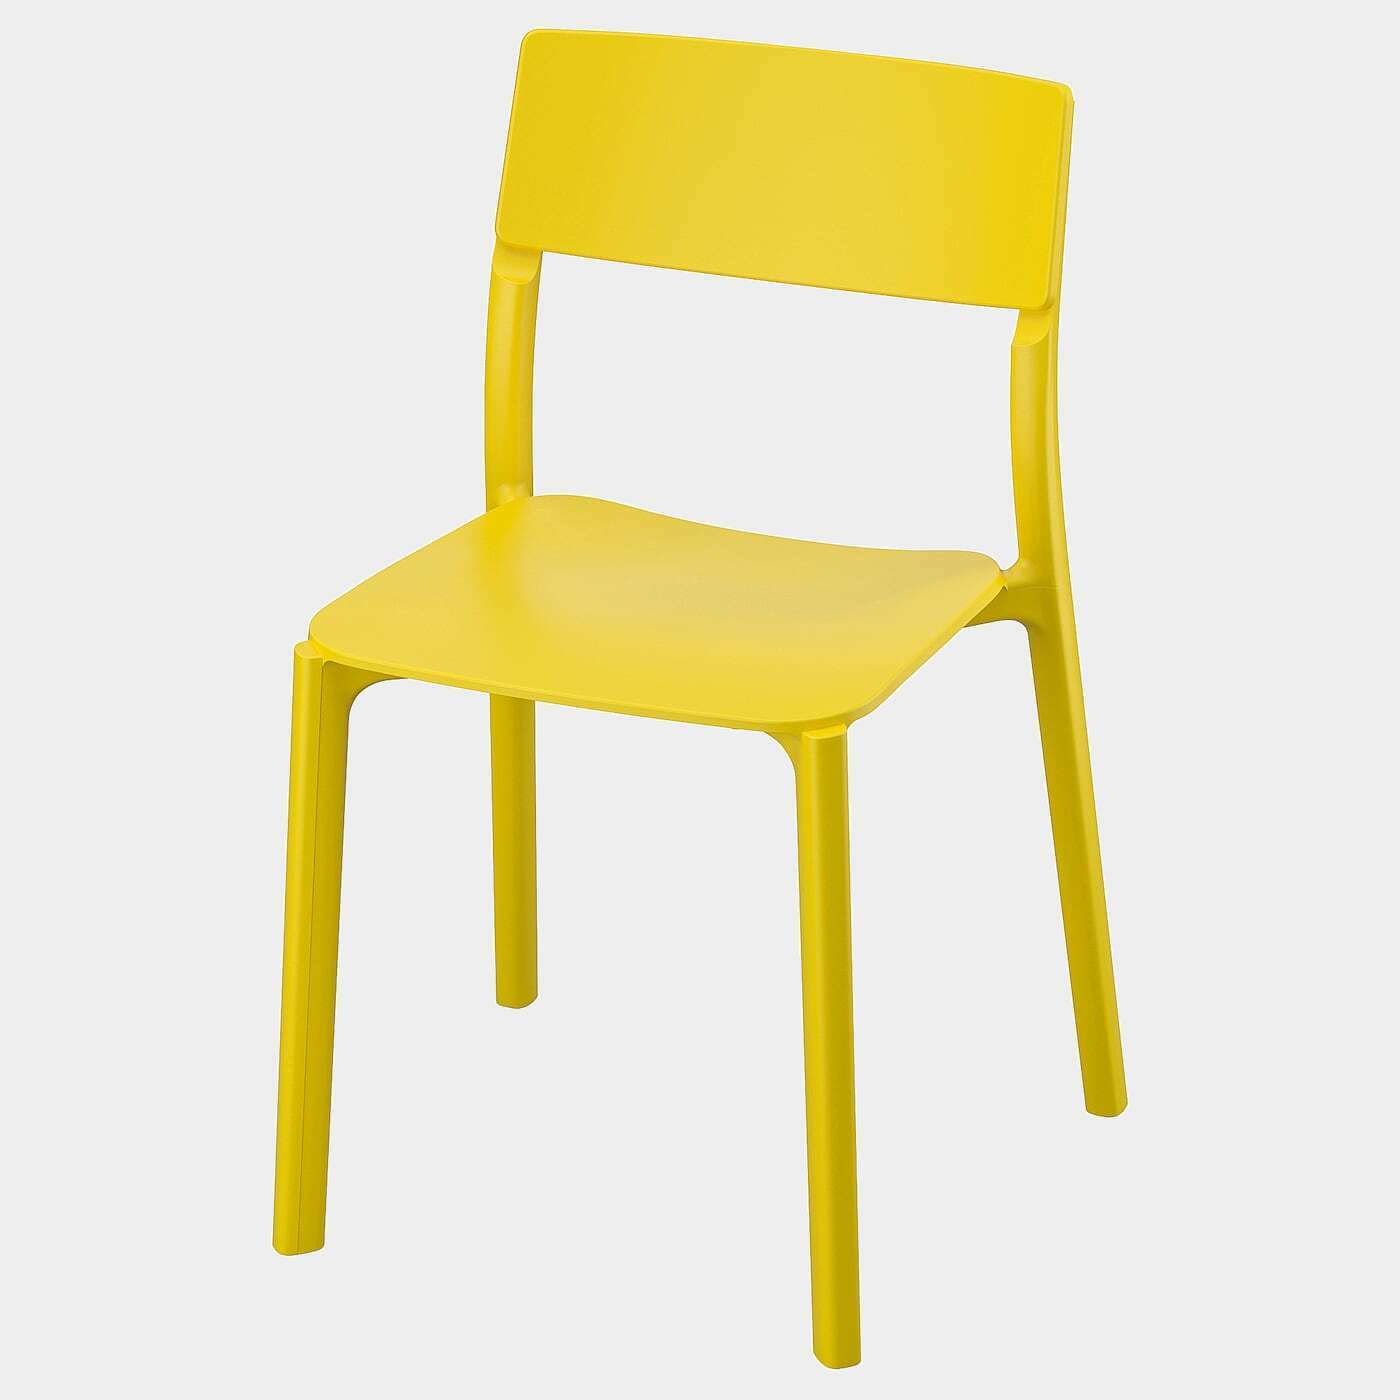 JANINGE Stuhl  - Esszimmerstühle - Möbel Ideen für dein Zuhause von Home Trends. Möbel Trends von Social Media Influencer für dein Skandi Zuhause.